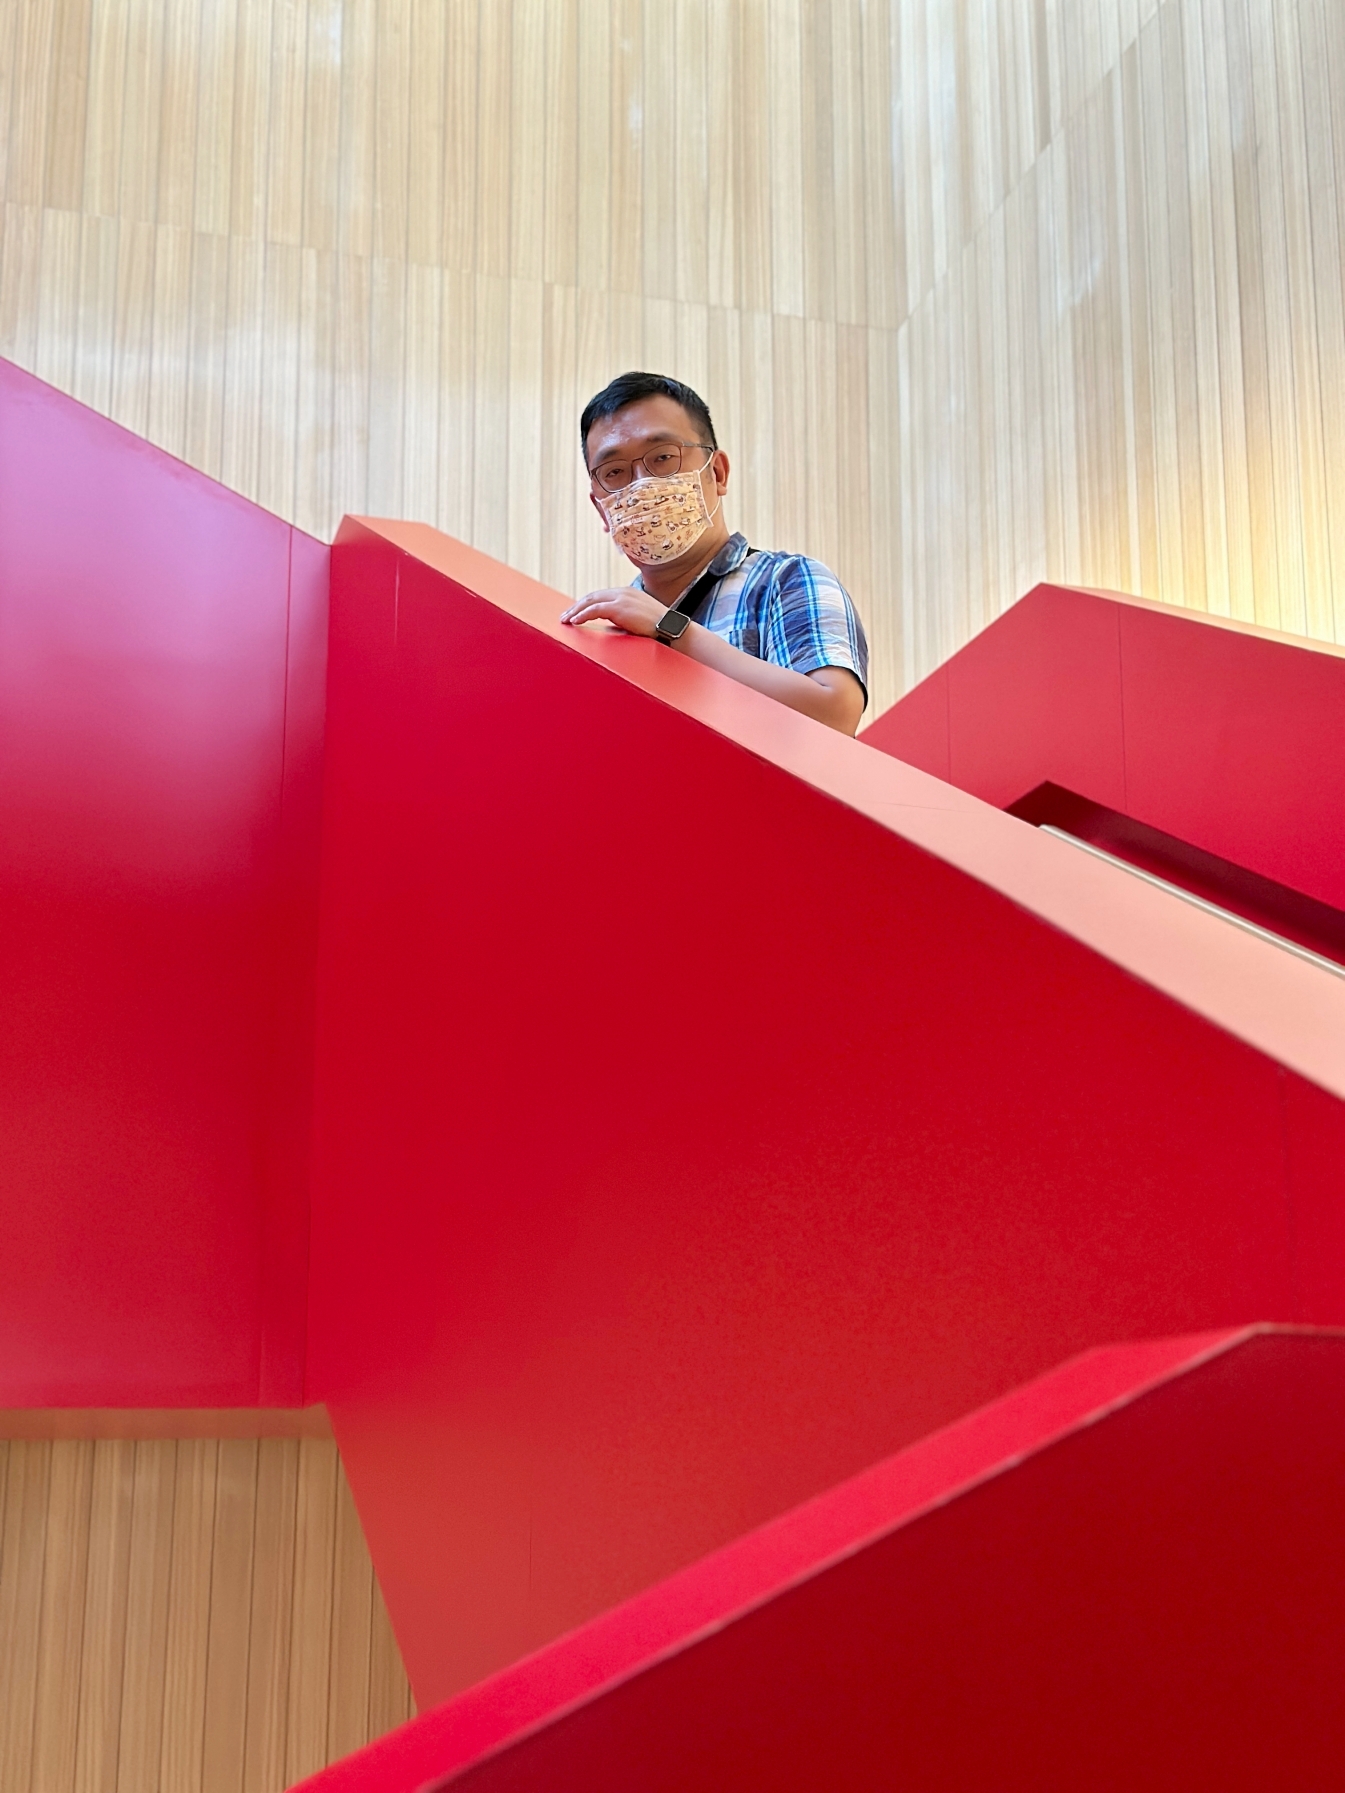 [台南景點]臺南市立圖書館 新總館|南臺科技大學附近超美圖書館．大紅色樓梯裝置藝術獨立書店 @VIVIYU小世界